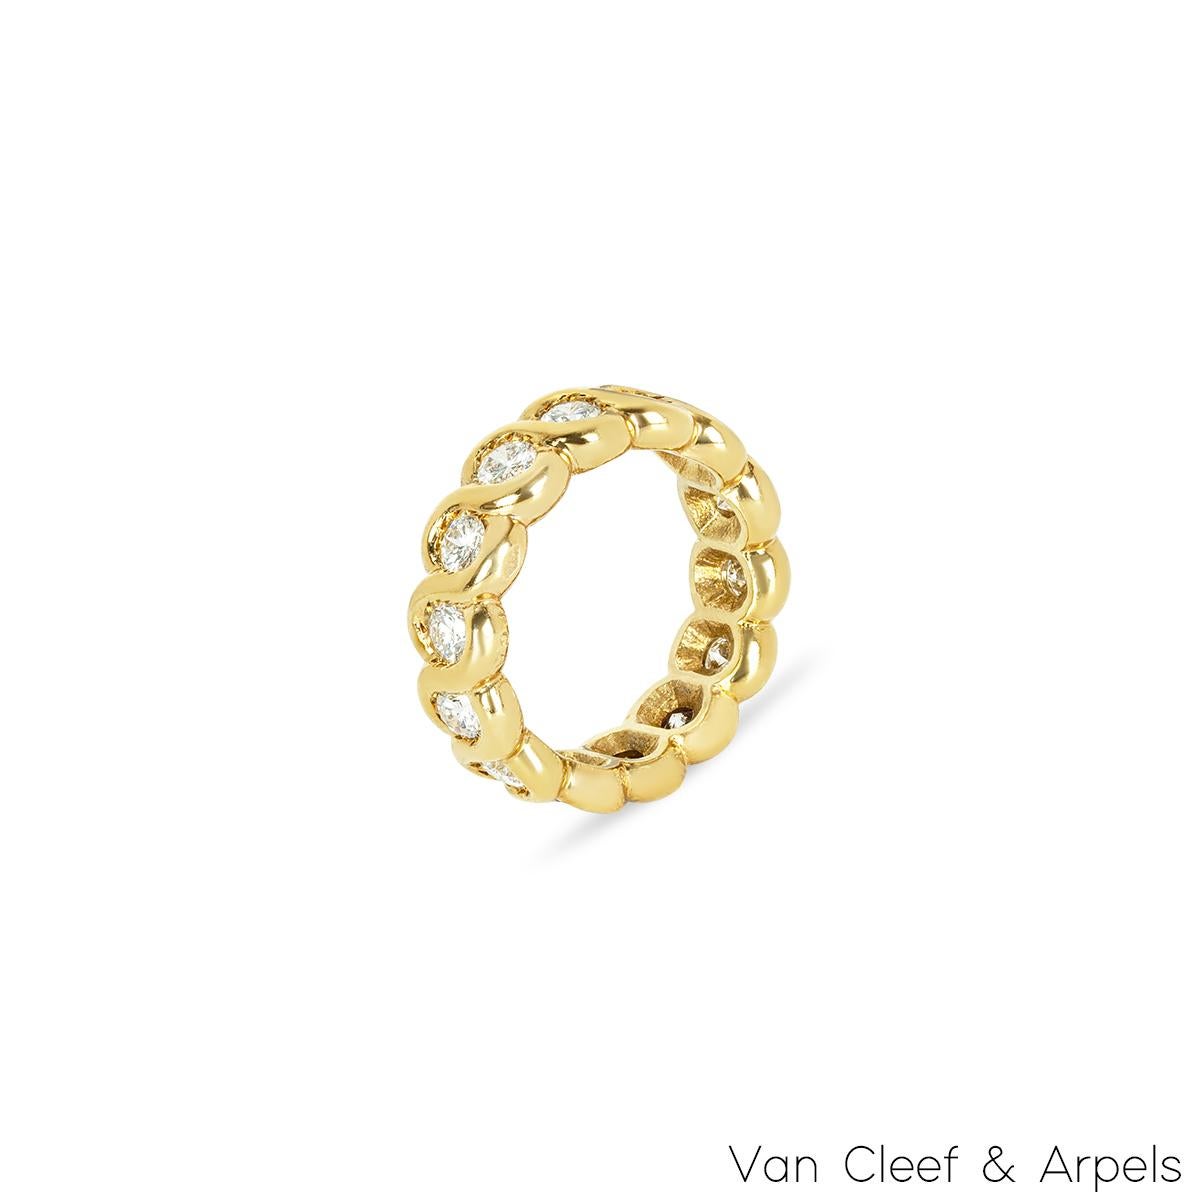 Eine schöne 18k Gelbgold Van Cleef & Arpels Diamant Ewigkeit Ring. Der Ring besteht aus 14 runden Diamanten im Brillantschliff, die rund um den Ring gefasst sind. Die Diamanten haben ein Gesamtgewicht von 1,40ct, Farbe G und Reinheit VS. Der Ring